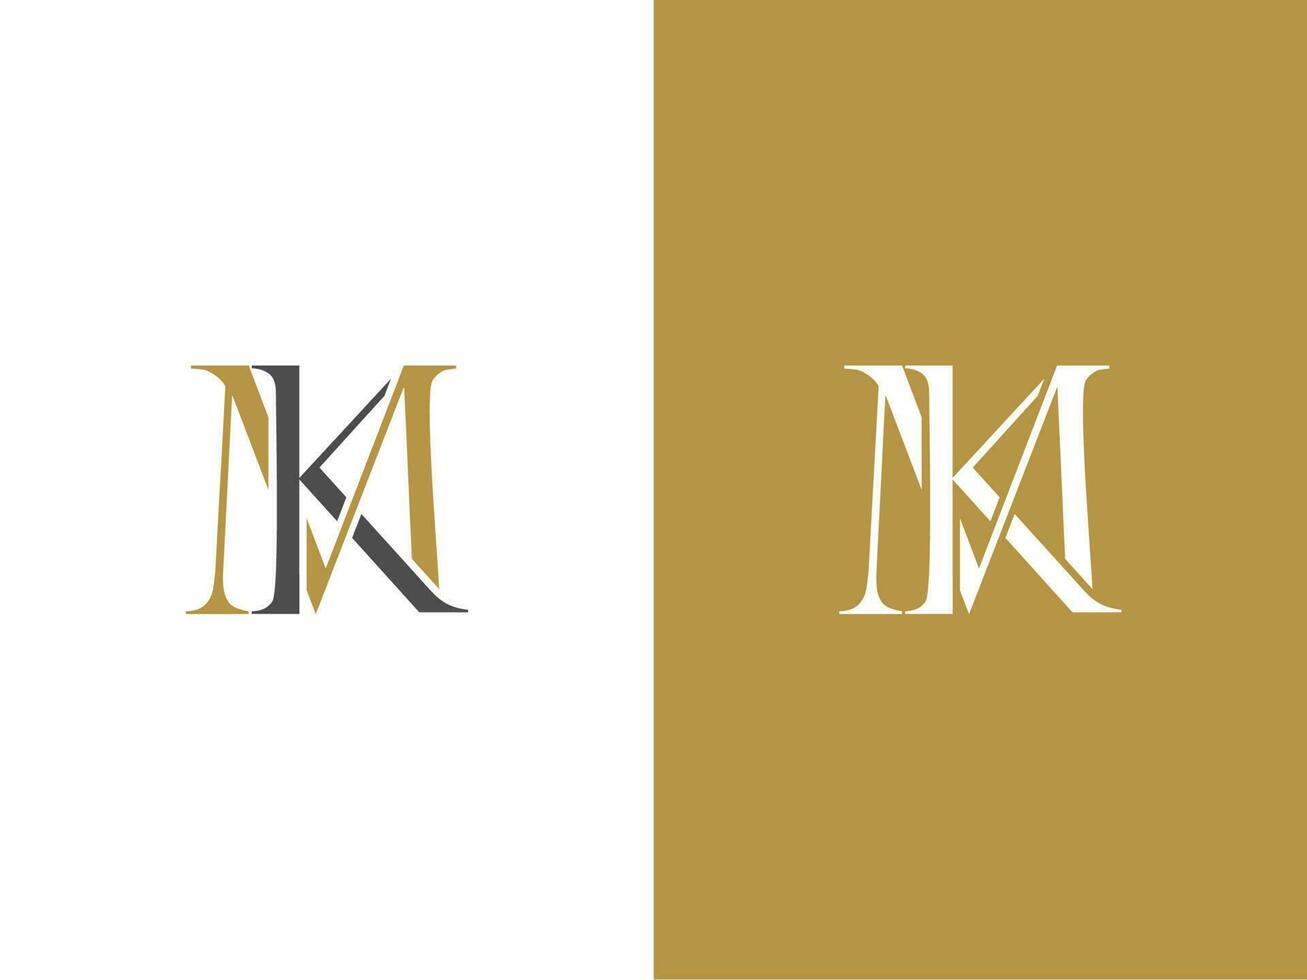 Prämie Vektor Brief mk Logo mit Krone Vektor, schön Logo Design zum Luxus Unternehmen Branding. elegant Identität Design im Gold Farbe.